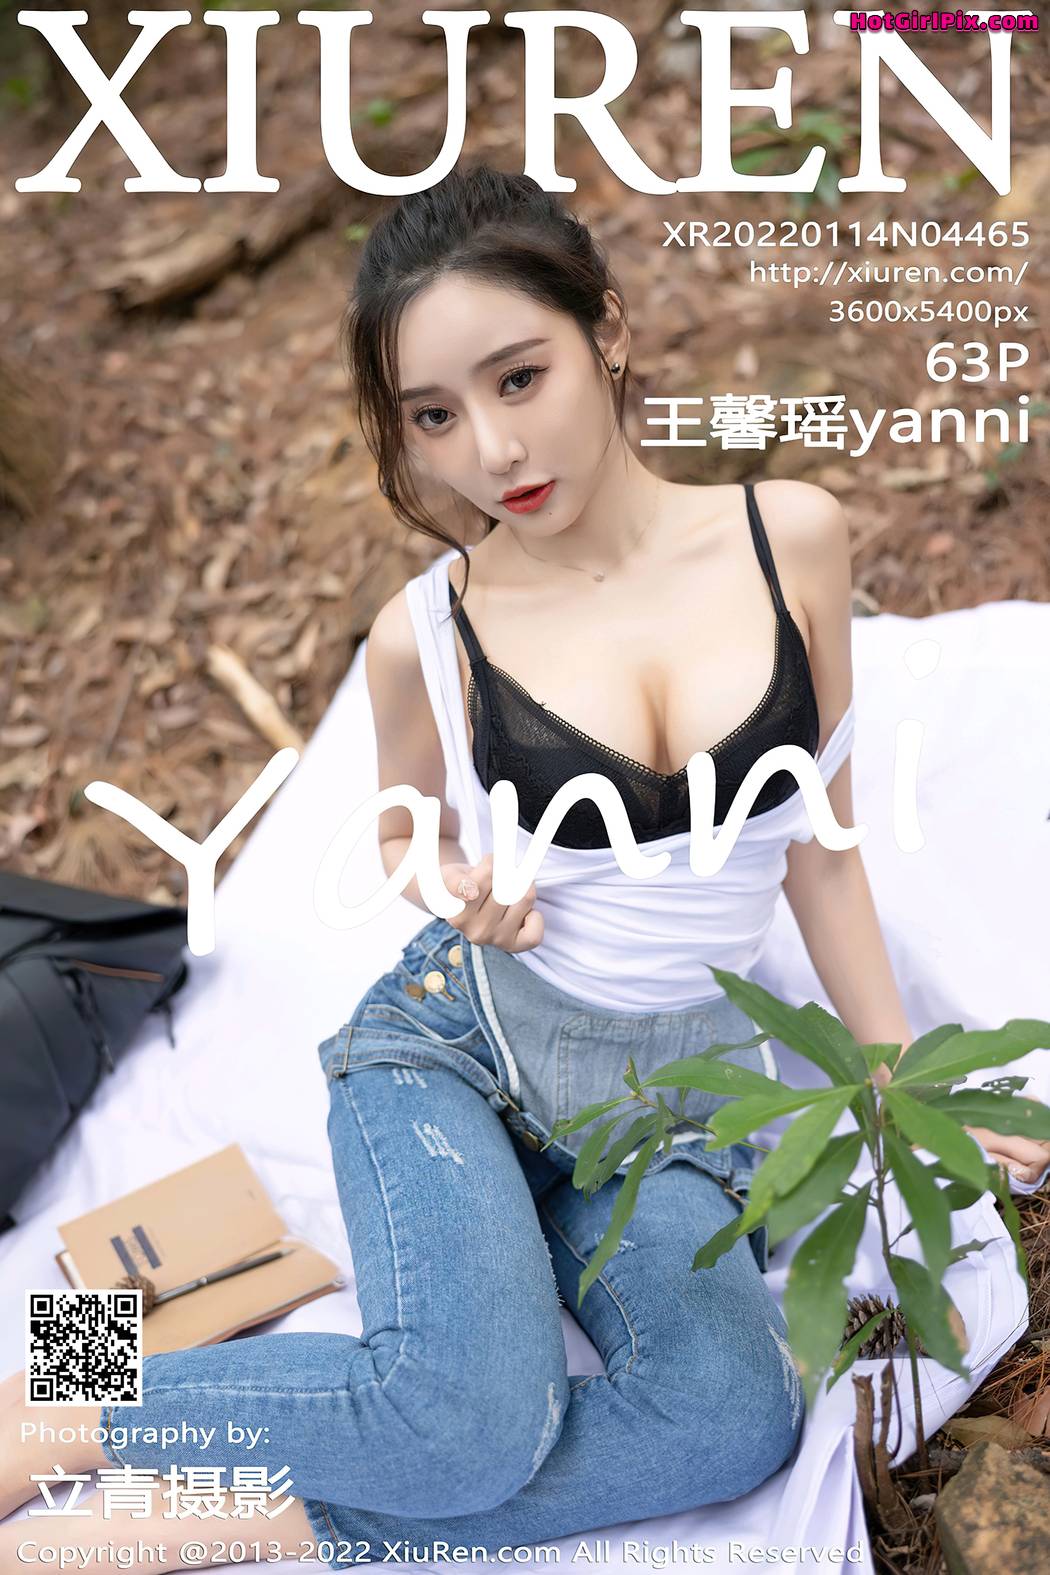 [XIUREN] No.4465 Wang Xin Yao 王馨瑶yanni Cover Photo